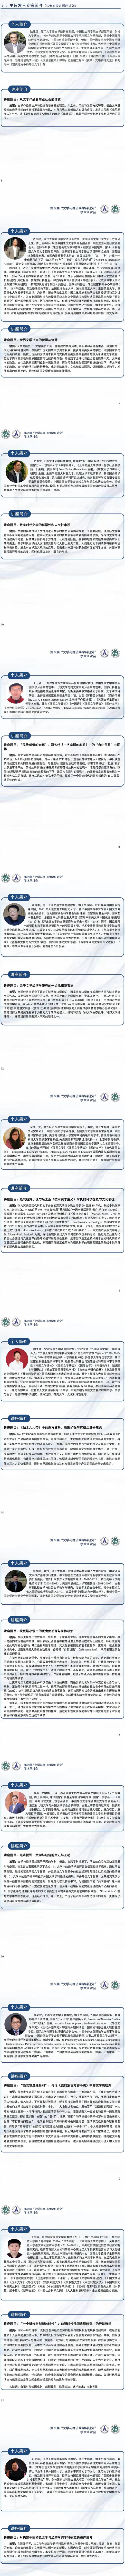 湖北省外国文学学会2022年会 会议手册_00(1).jpg